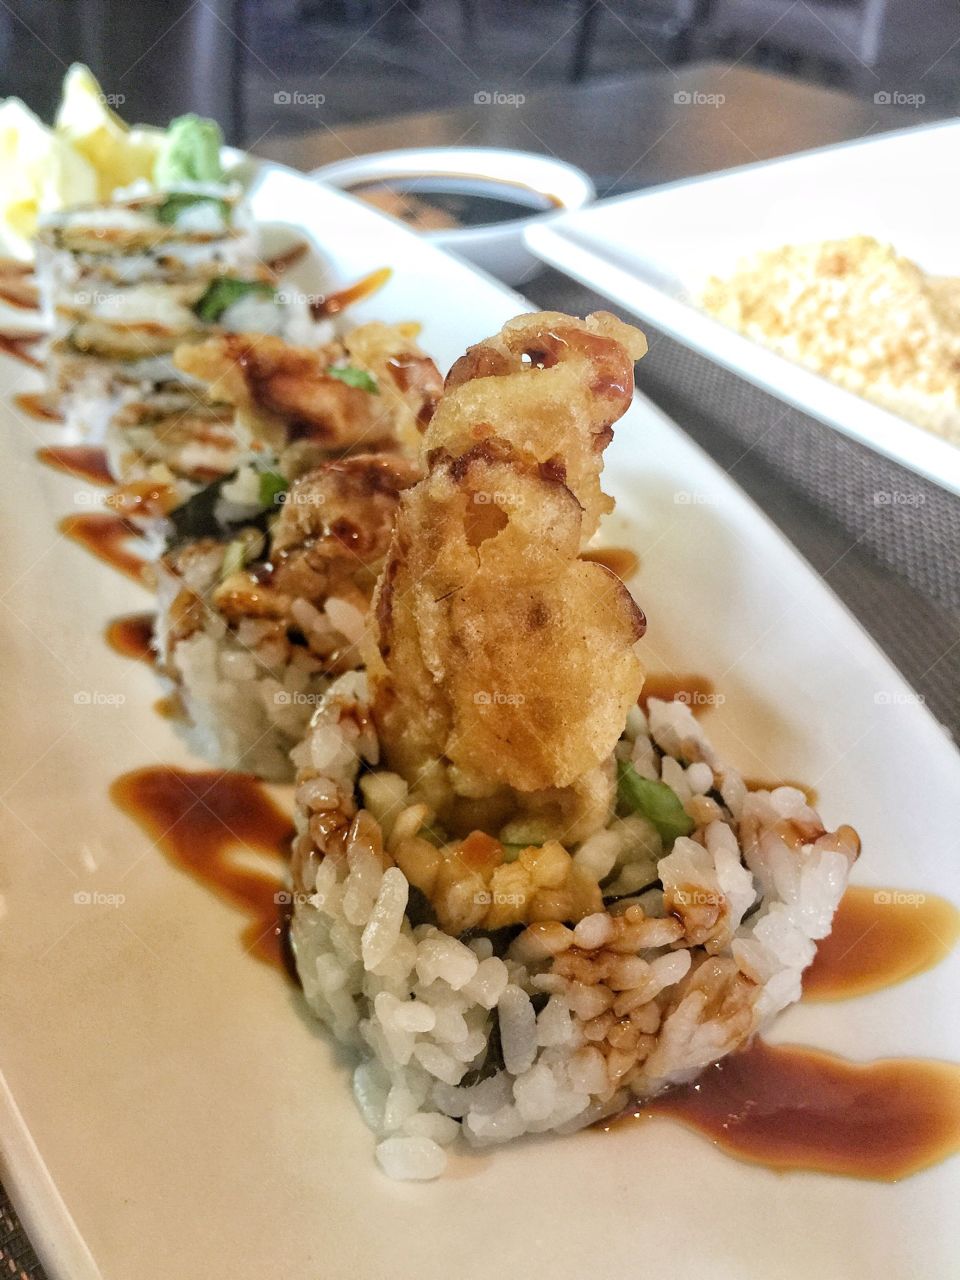 Eel sushi